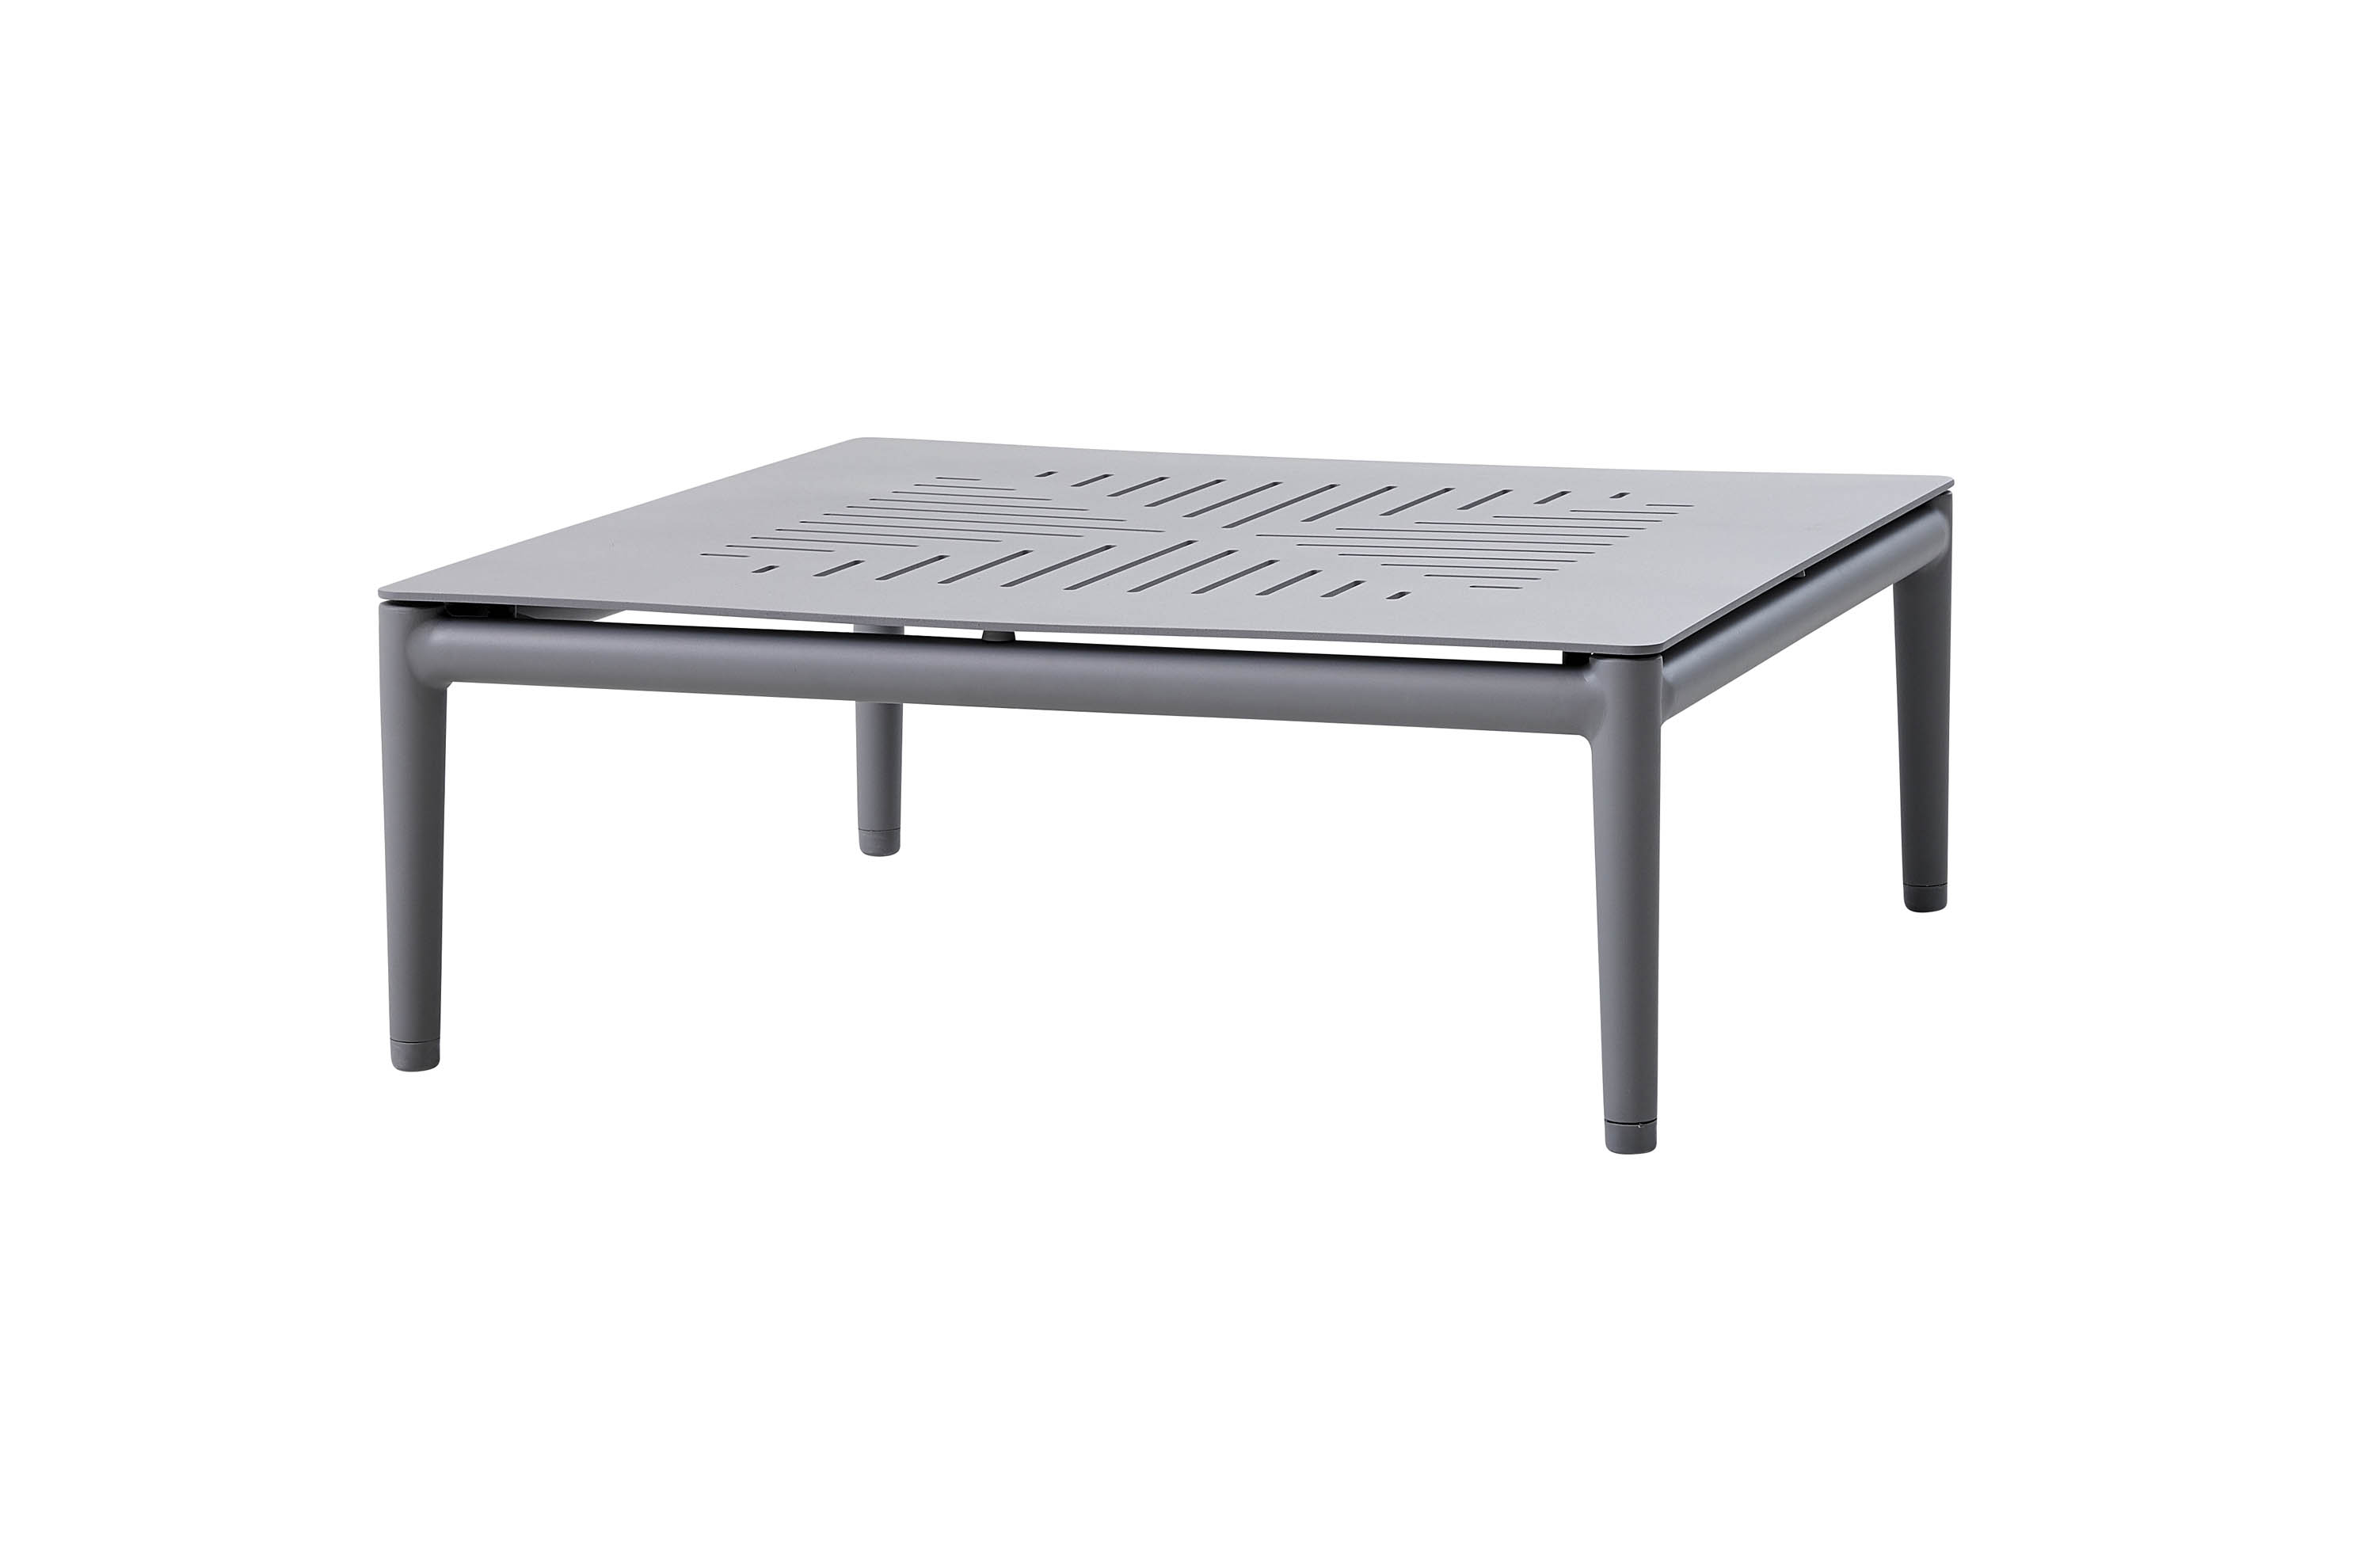 Cane-line Conic sofabord Light grey/aluminium 75 x 28 cm